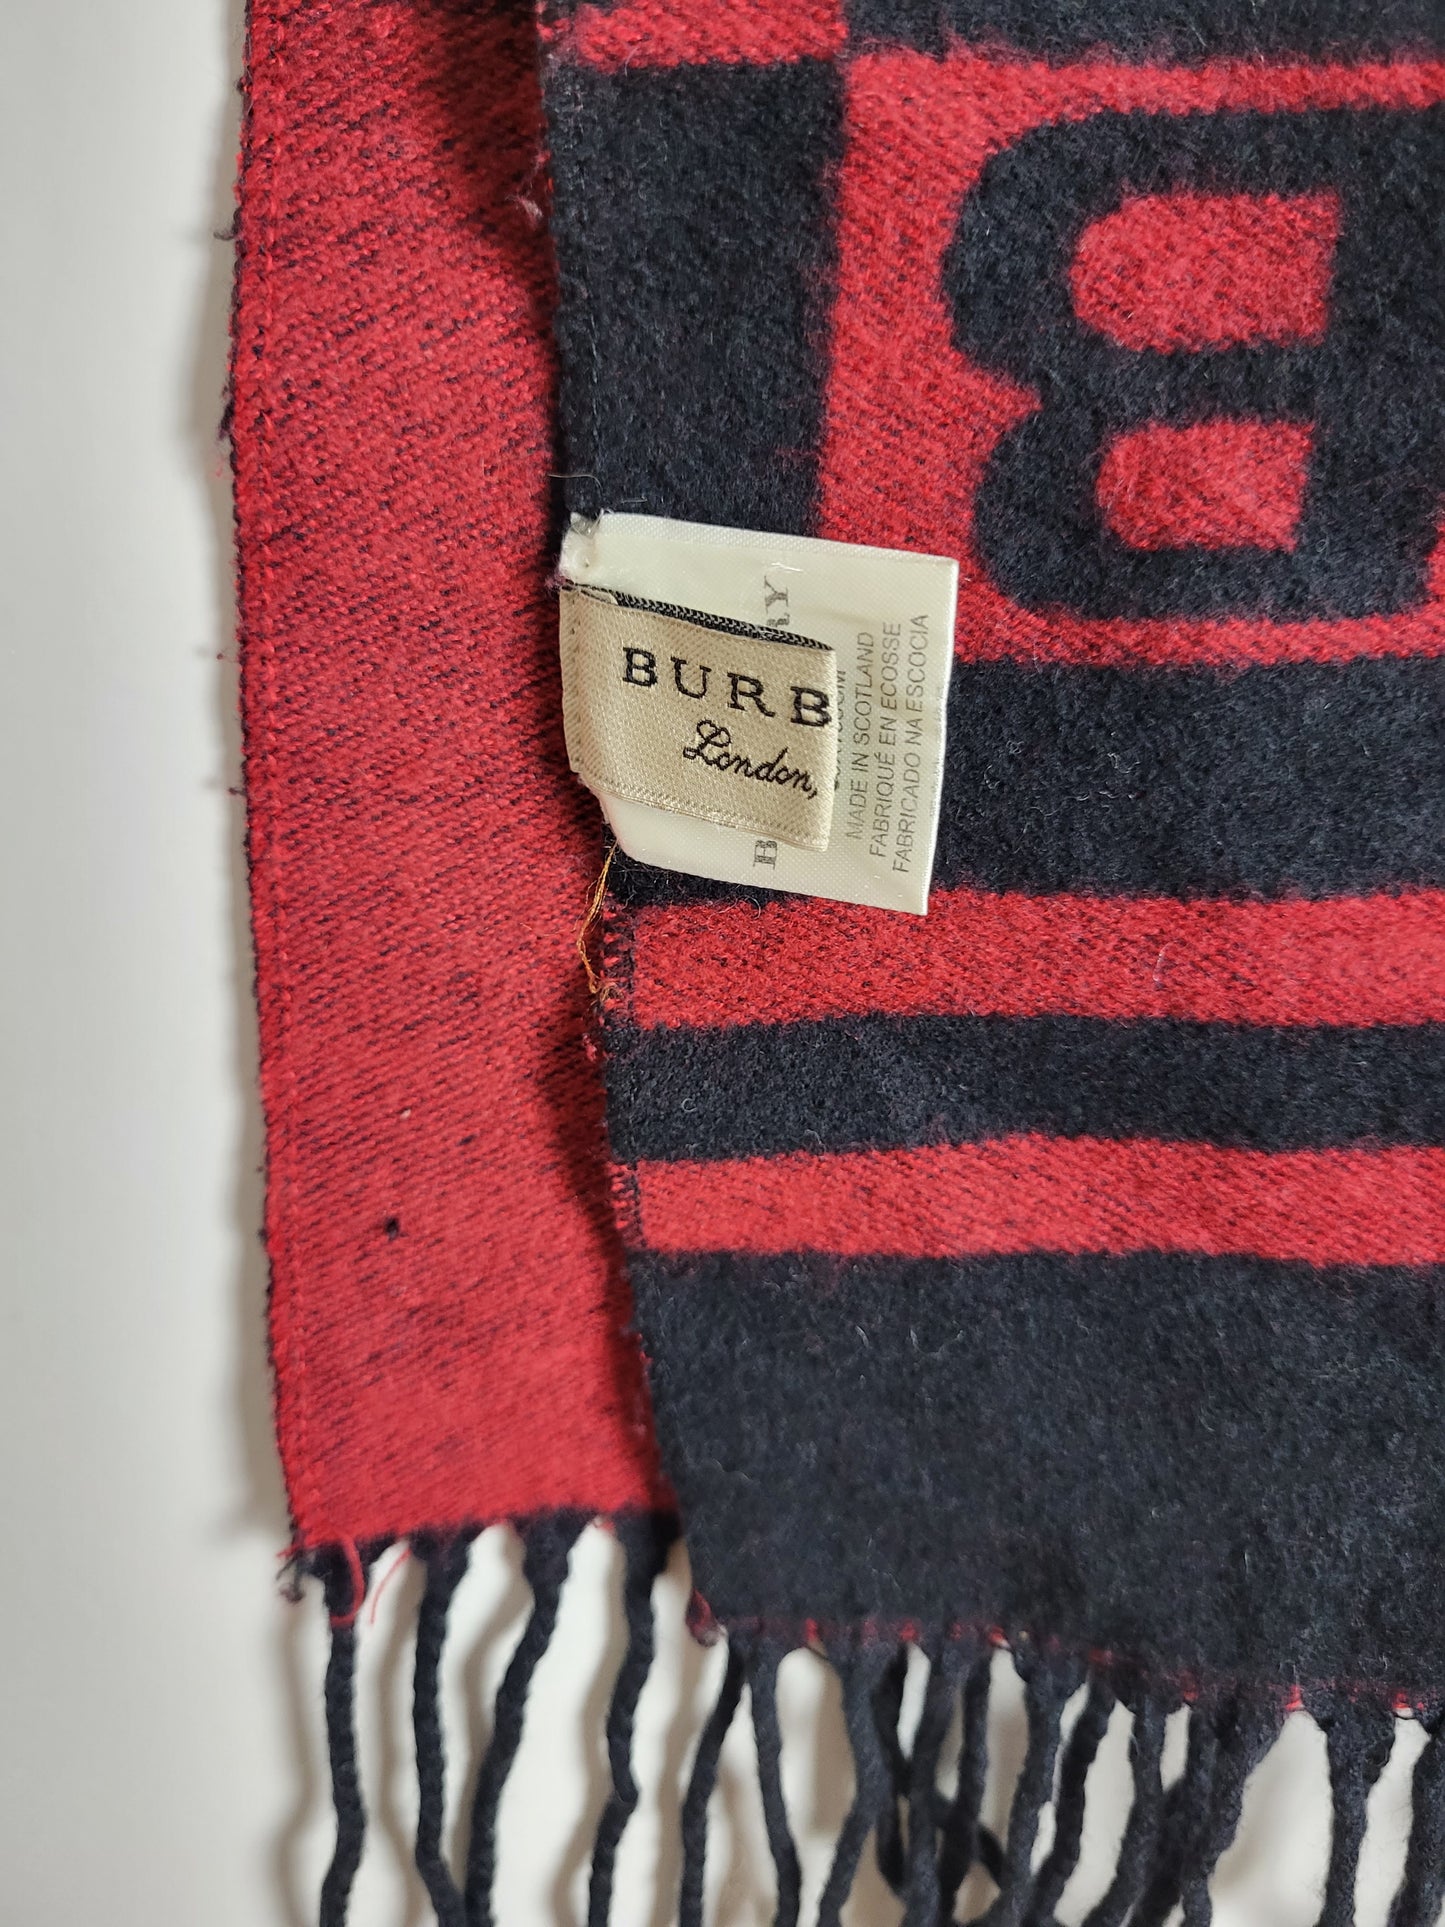 Burberry London - Vintage Schal - Rot / Schwarz Muster - Kaschmir - 168 x 30